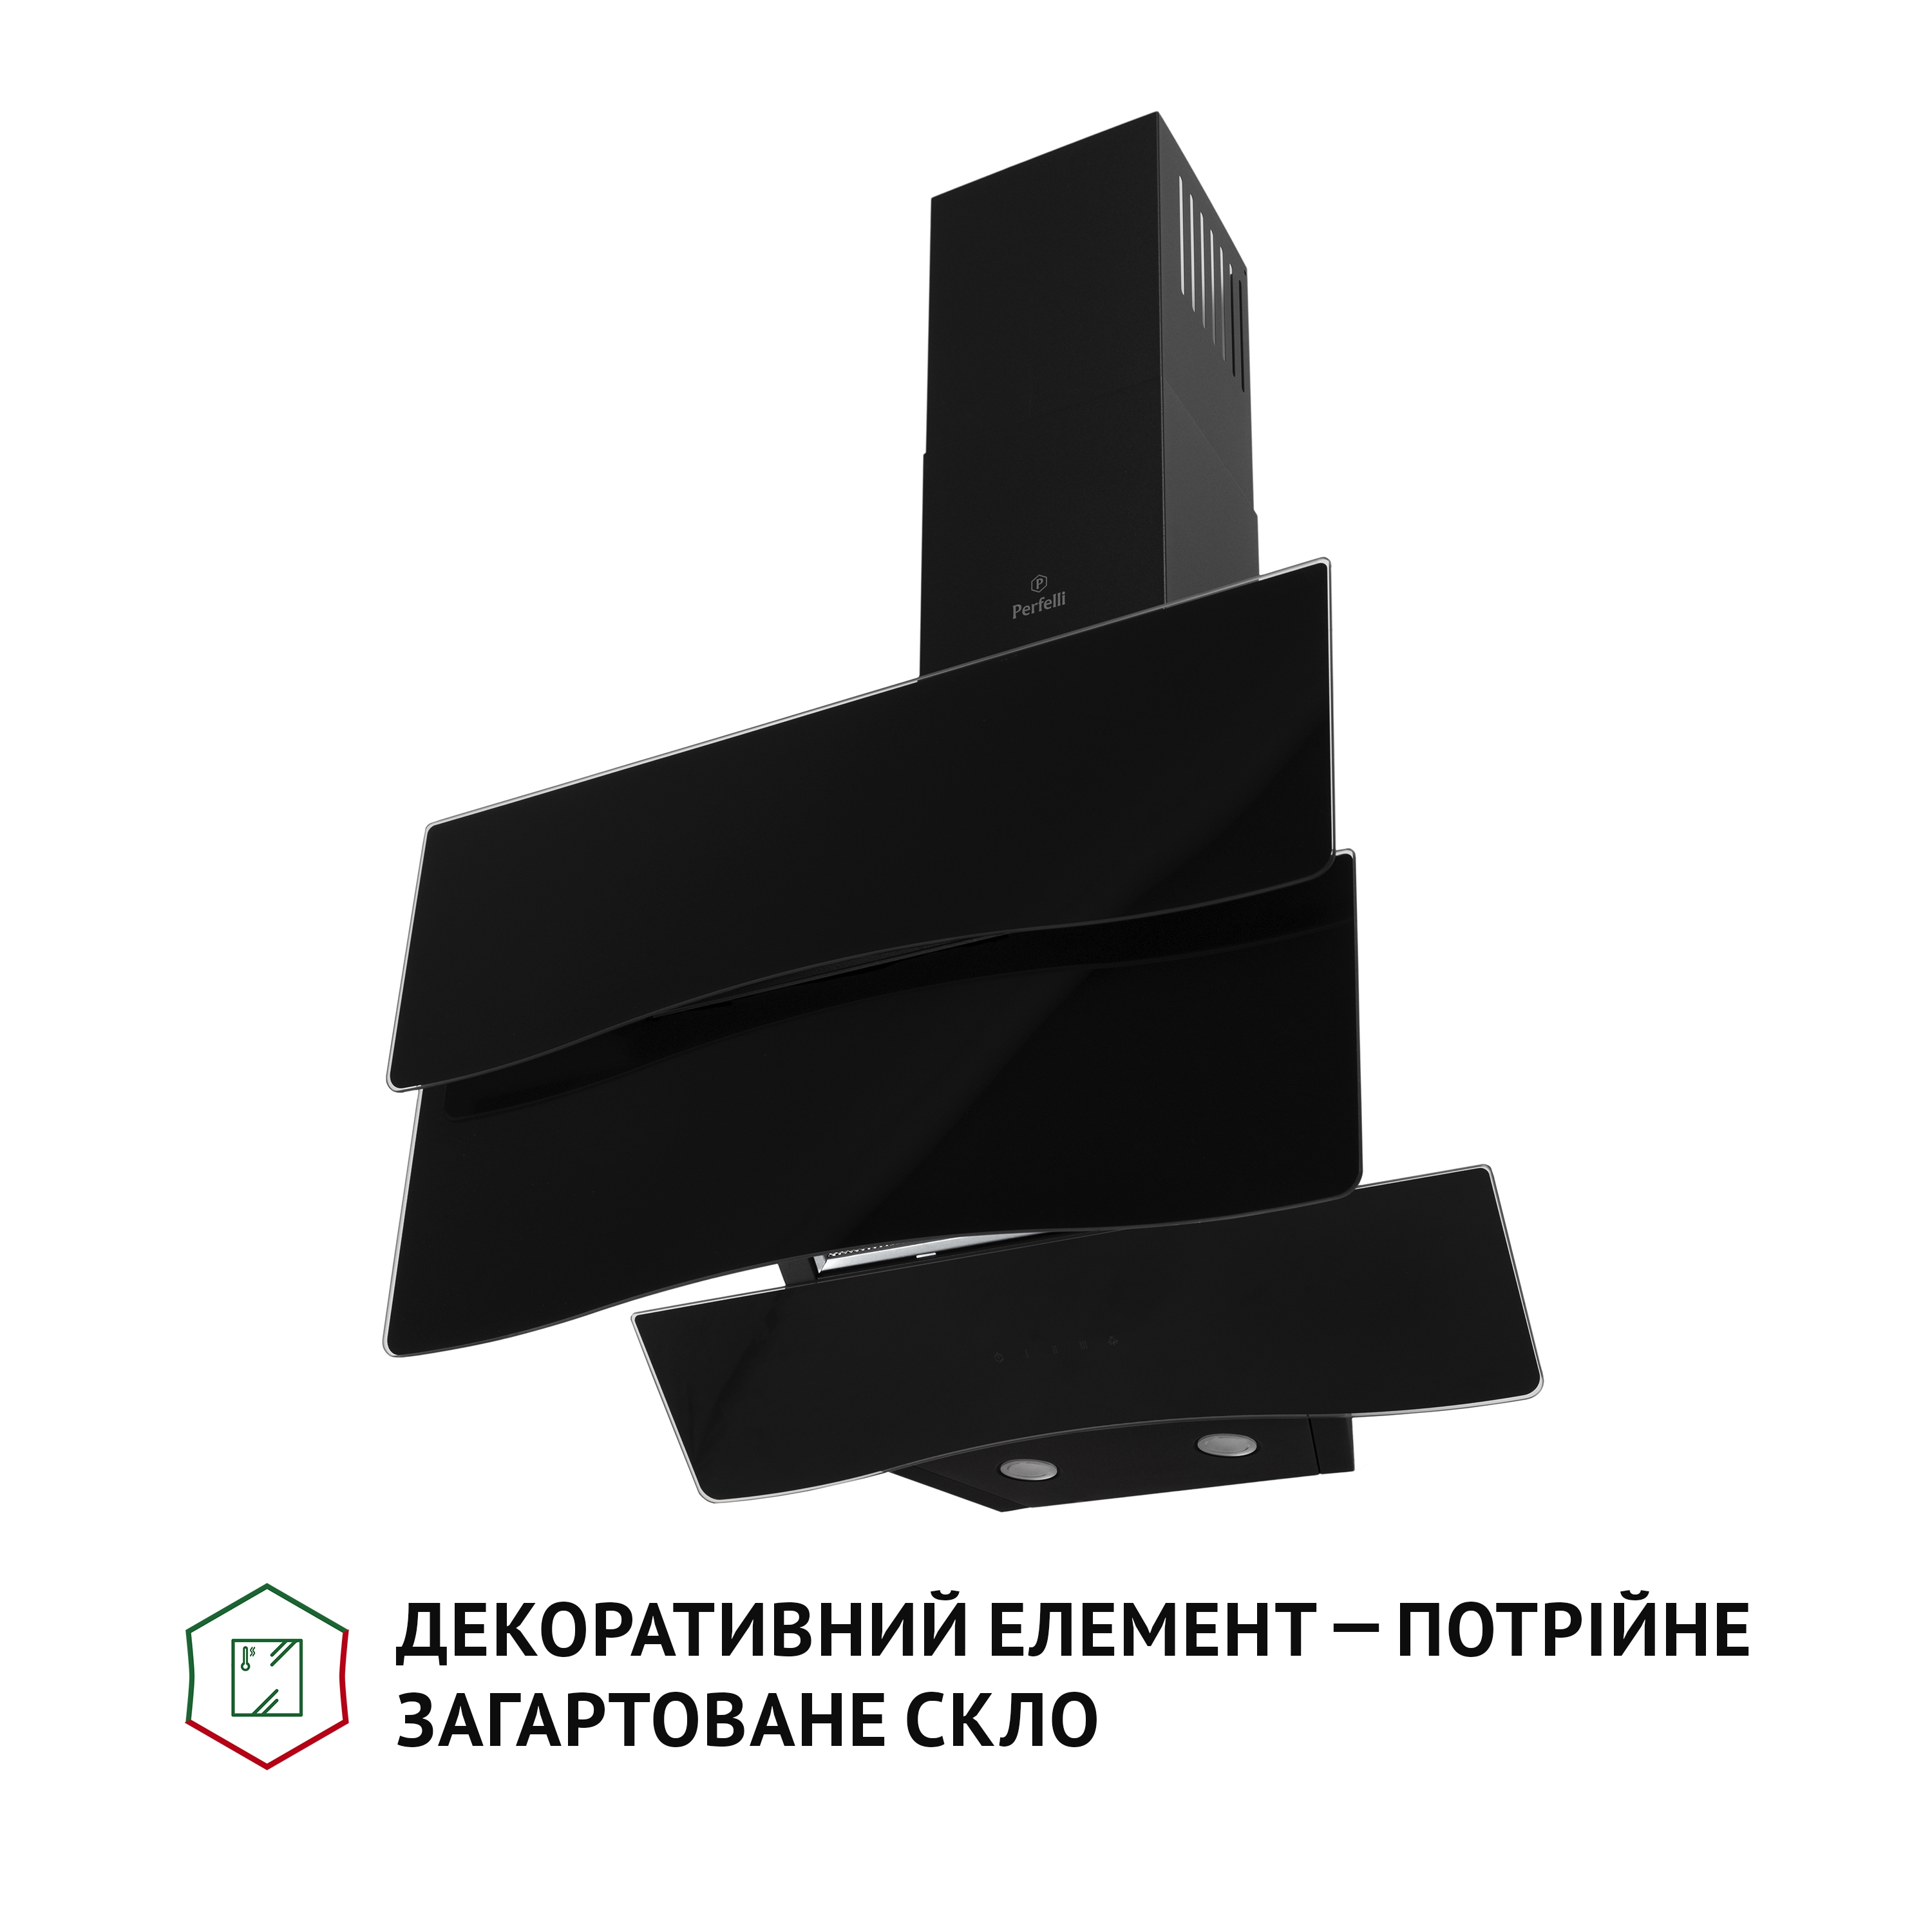 продаємо Perfelli DNS 6482 D 850 BL LED в Україні - фото 4